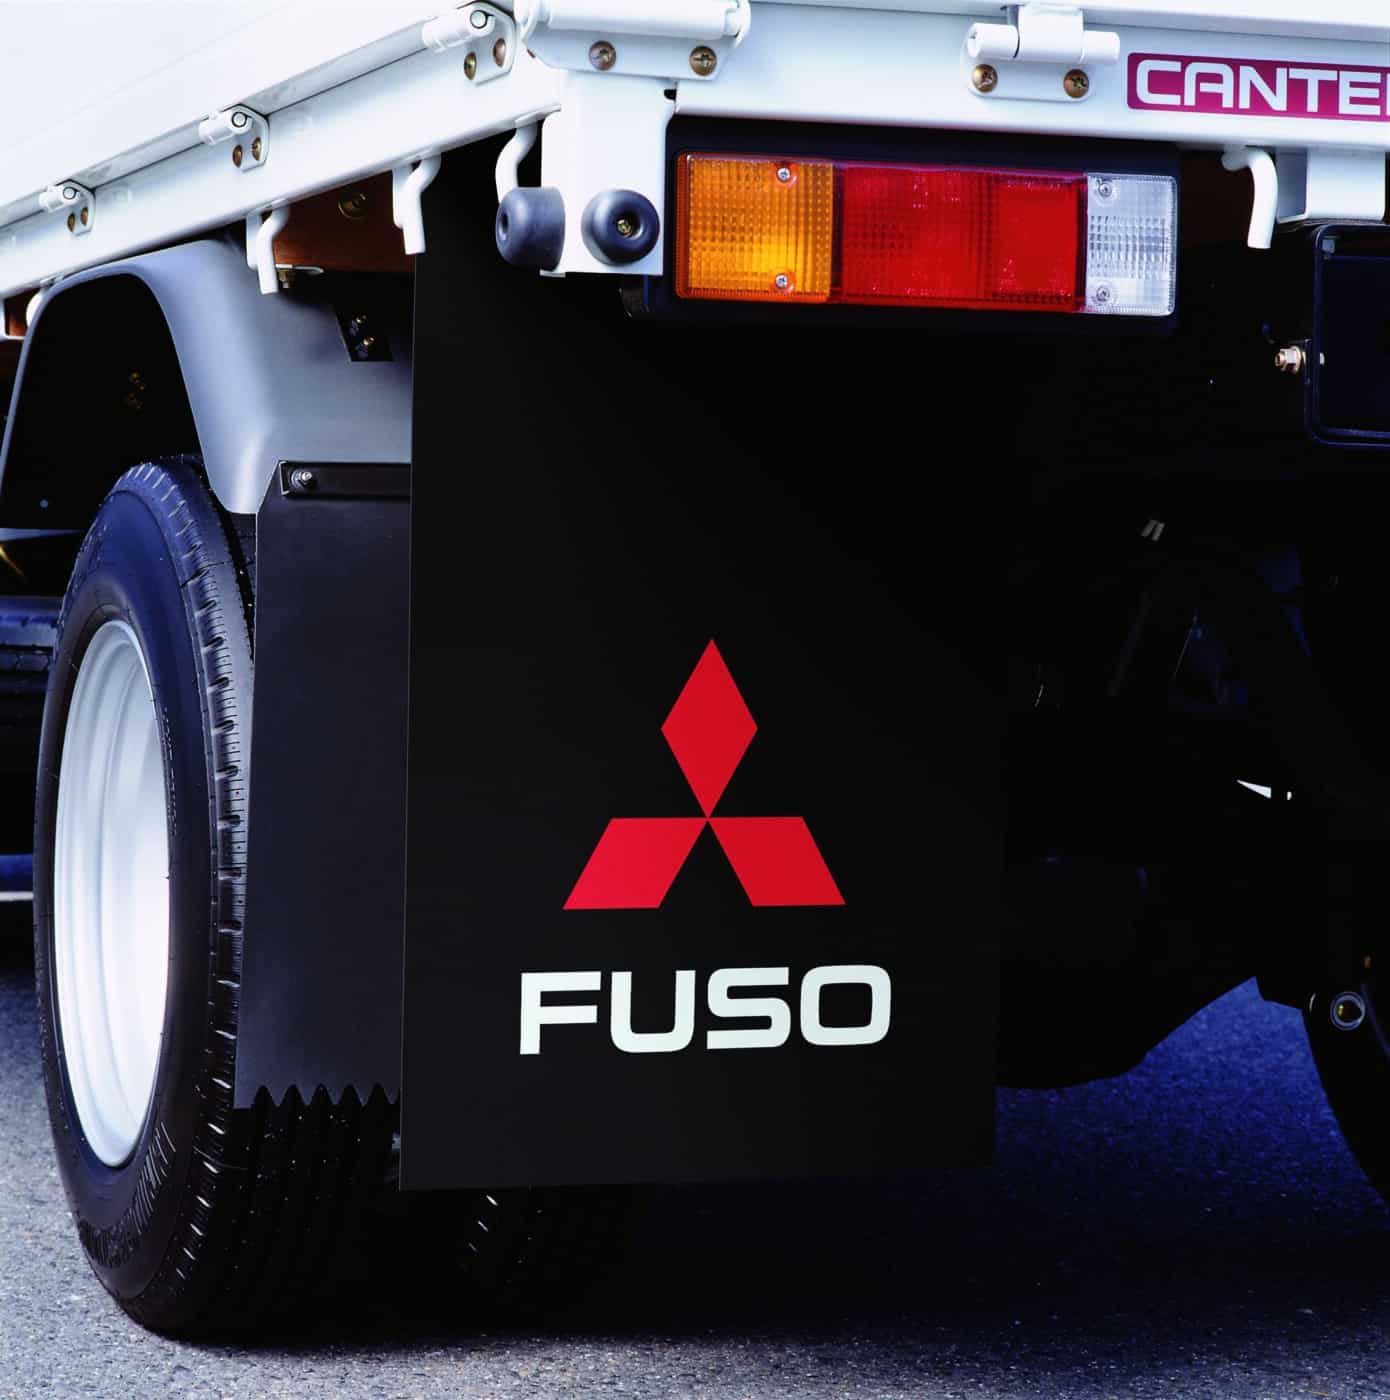 Lapače nečistôt FUSO chránia vozidlo, spolujazdov, iné vozidlá a chodcov pred blatom a nečistotami, ktoré odlietavajú od pneumatík.